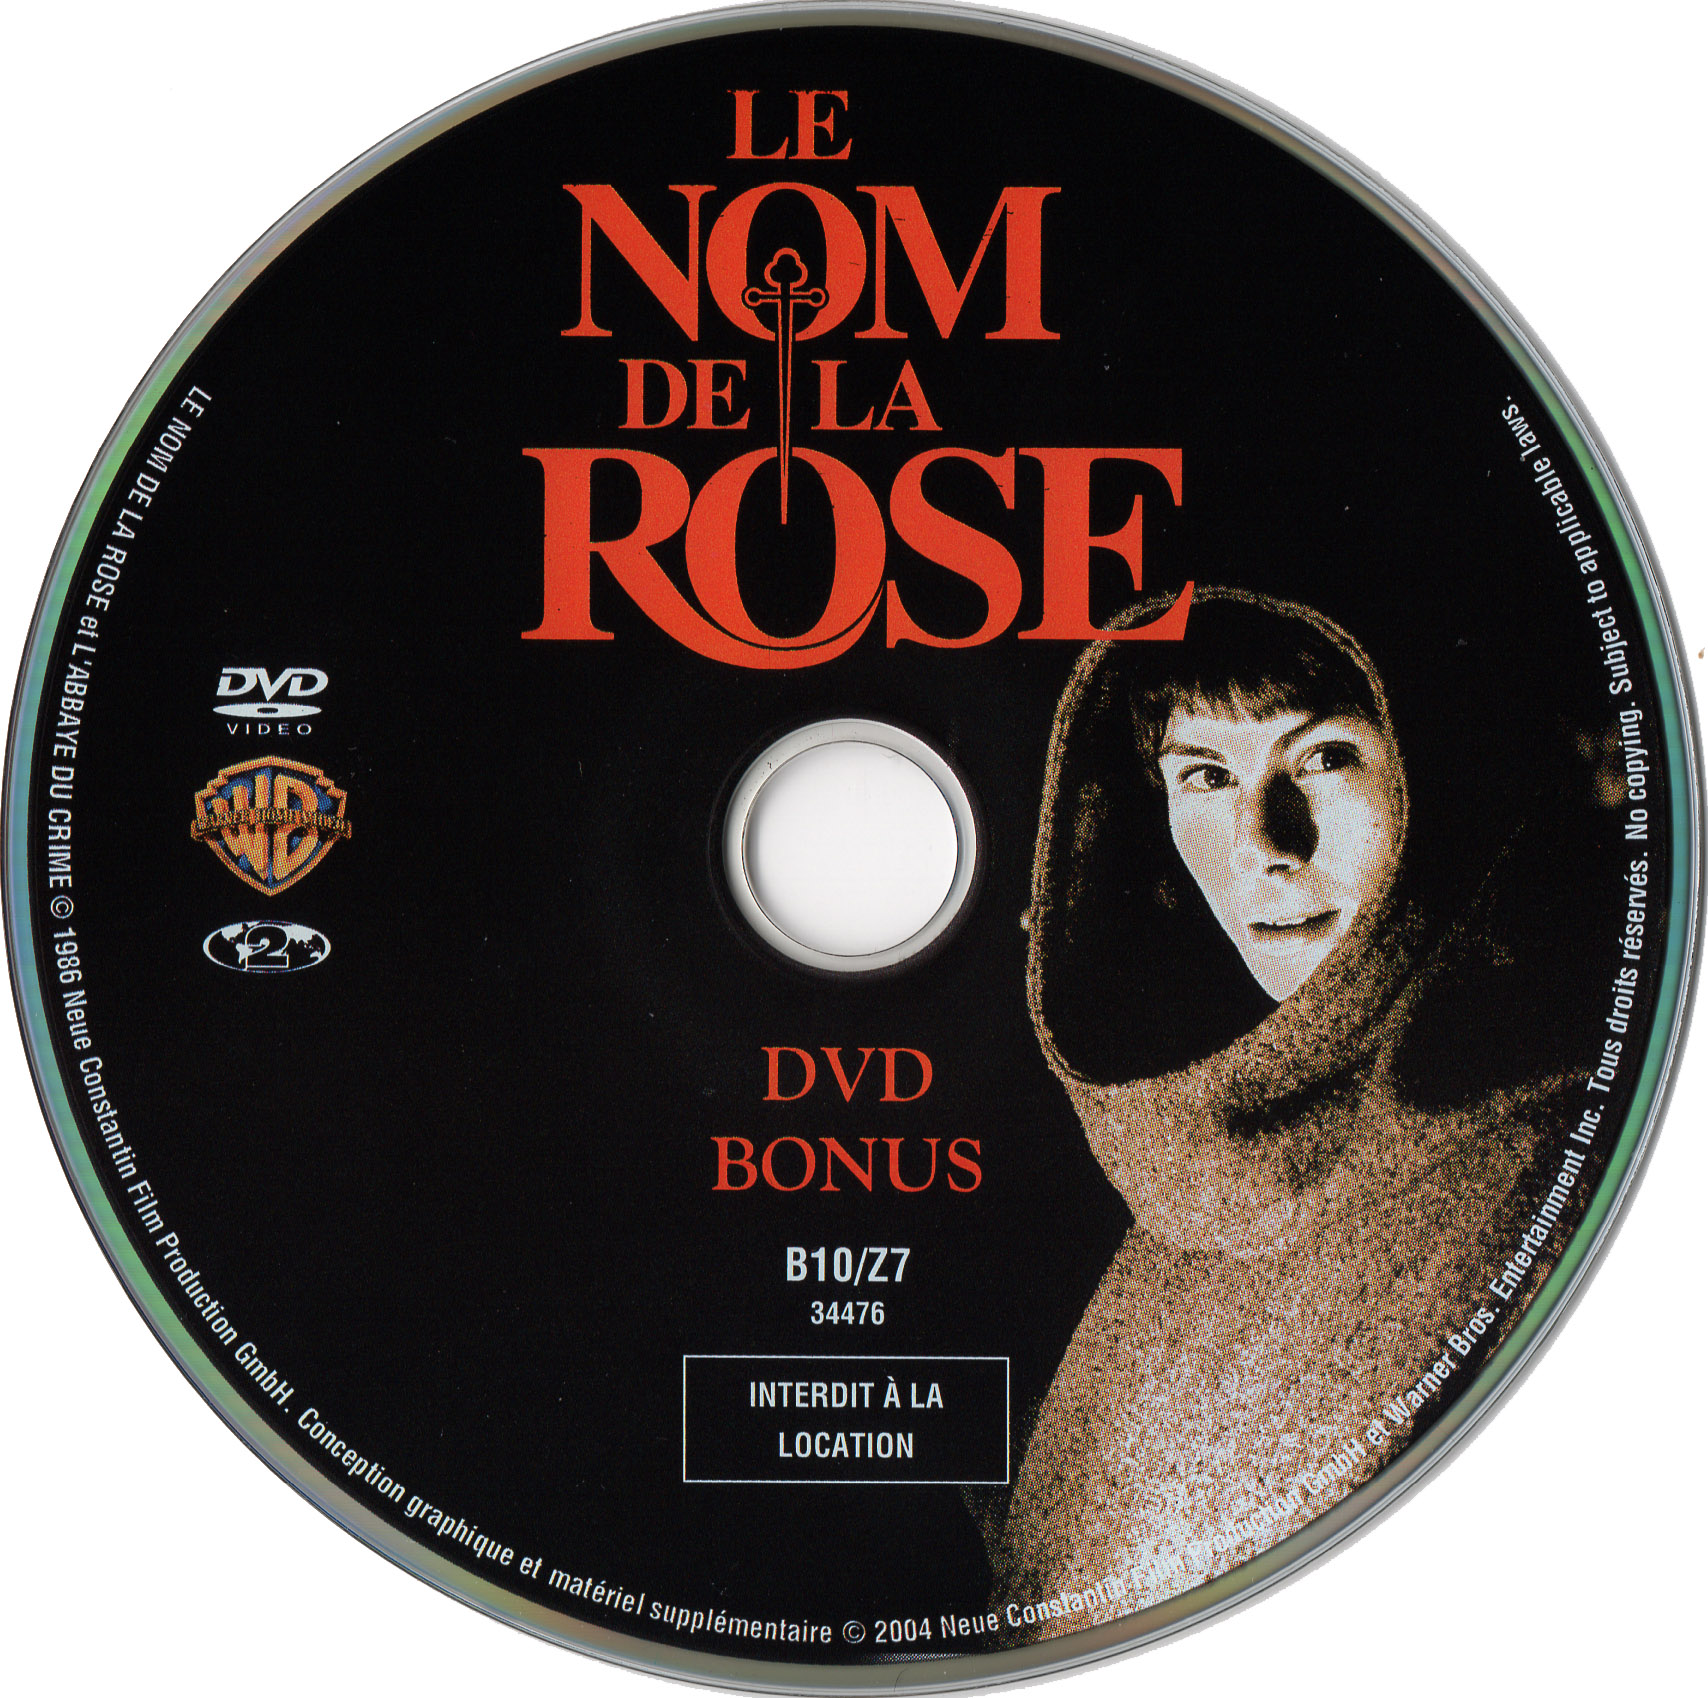 Le nom de la rose DISC 2